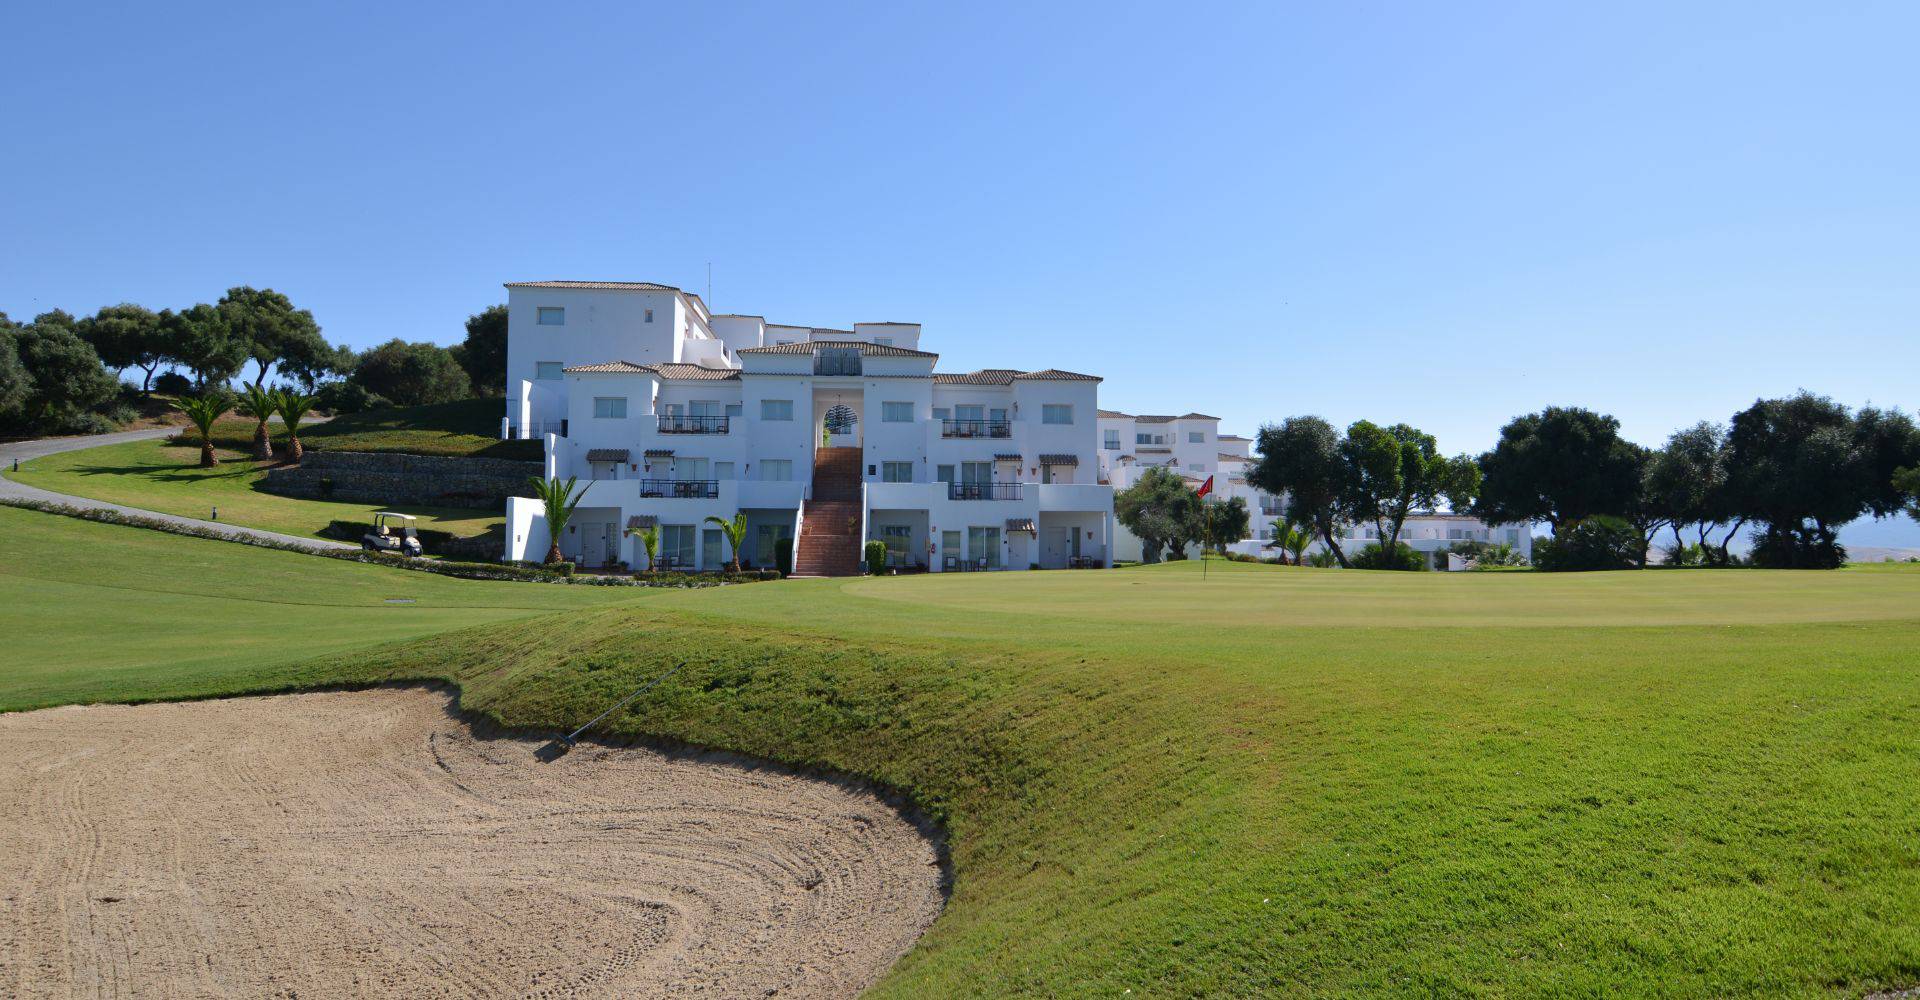 Descubre el lugar perfecto  Fairplay Golf & Spa Resort Casas Viejas